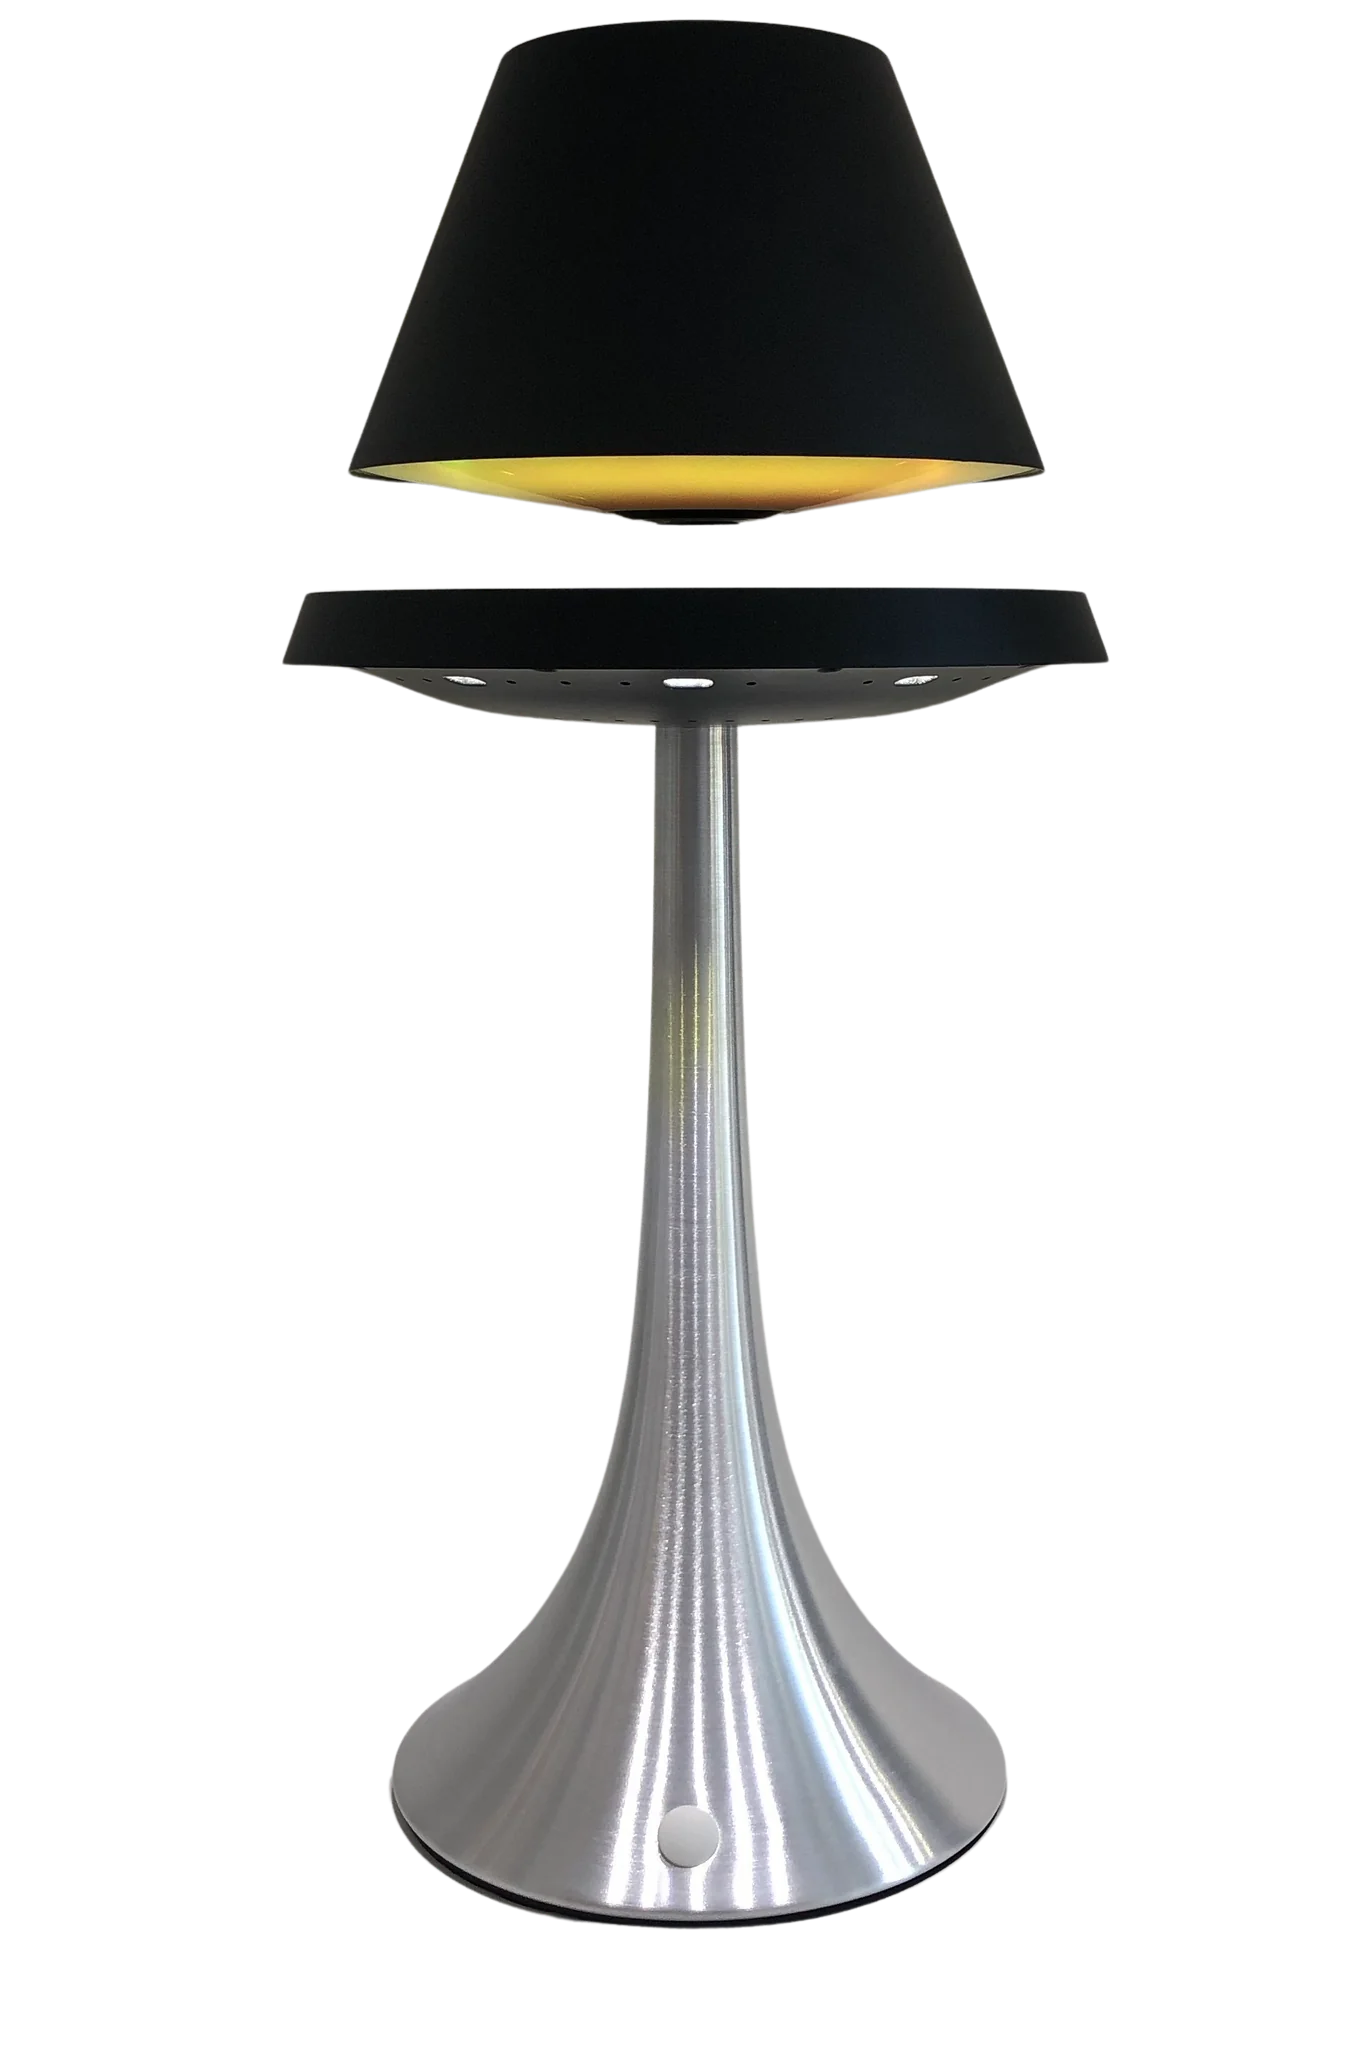 Levitation Technology LED Lamp - Next-Level Illumination